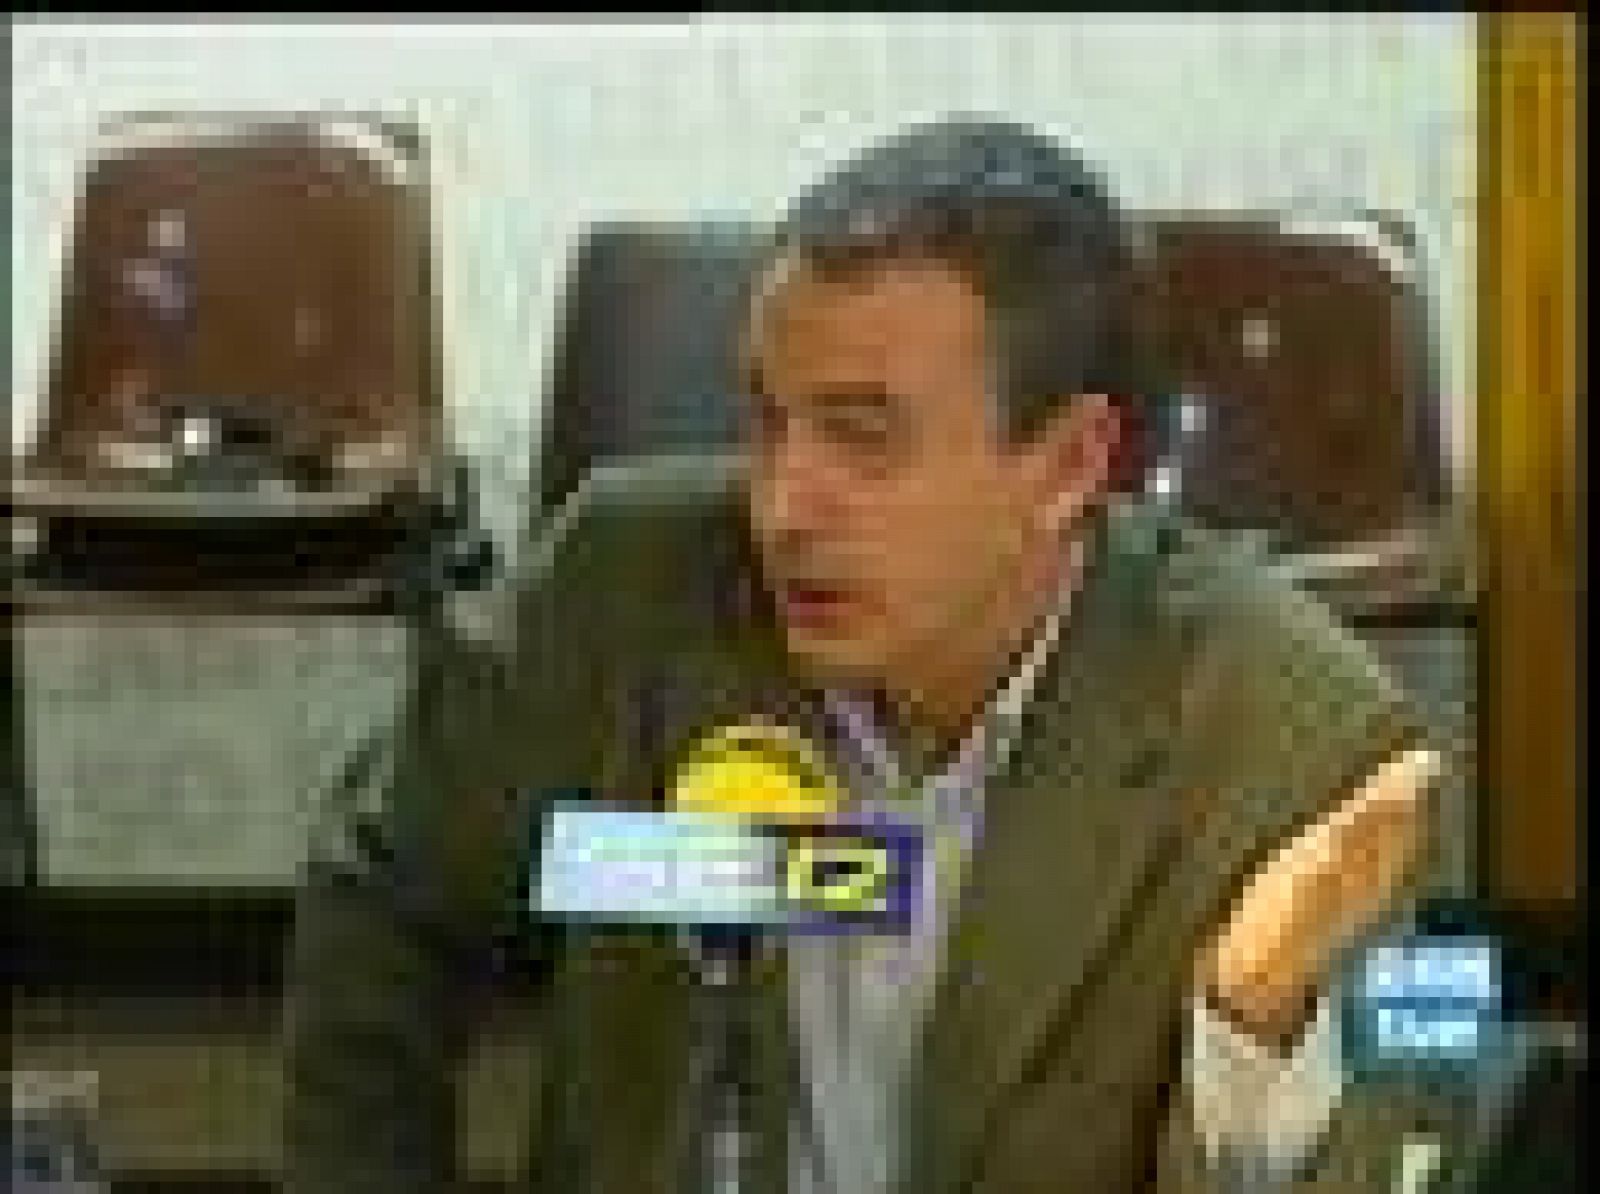  Zapatero, en la Cadena SER, dice que la consulta de Ibarretxe es una "protesta sin sentido"